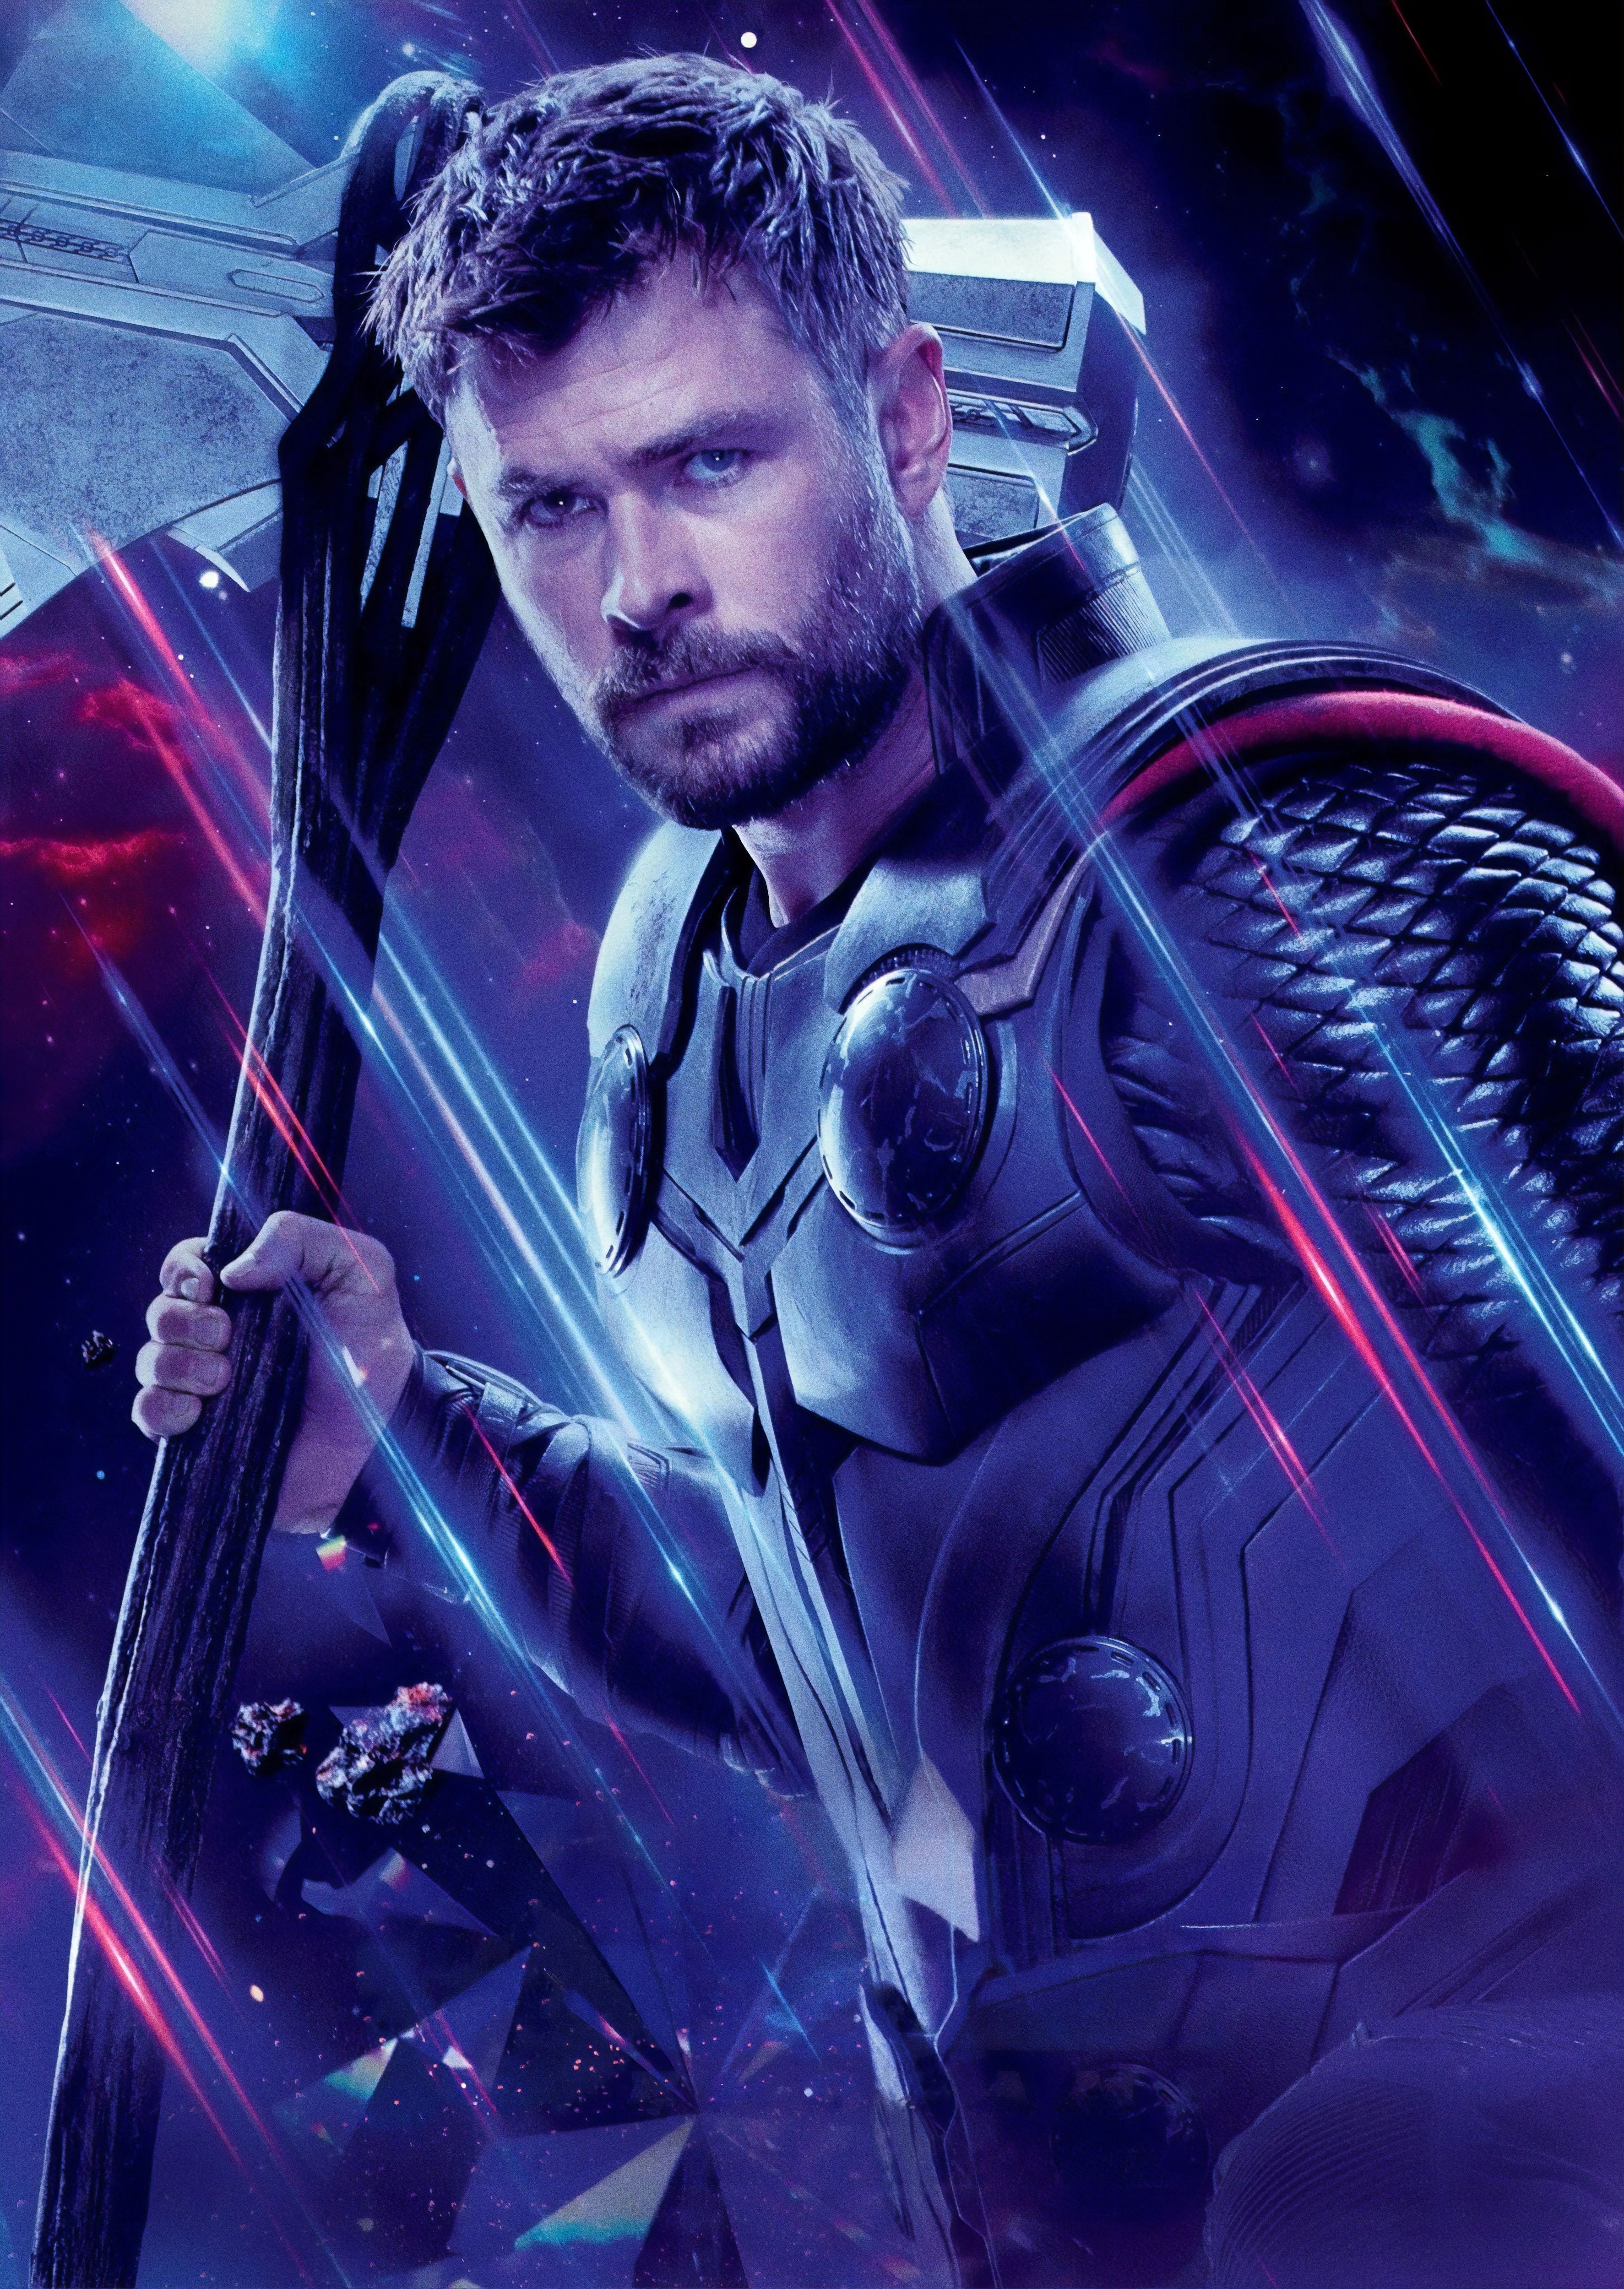 endgame #avengers #marvel #avengersendgame #ironman #infinitywar